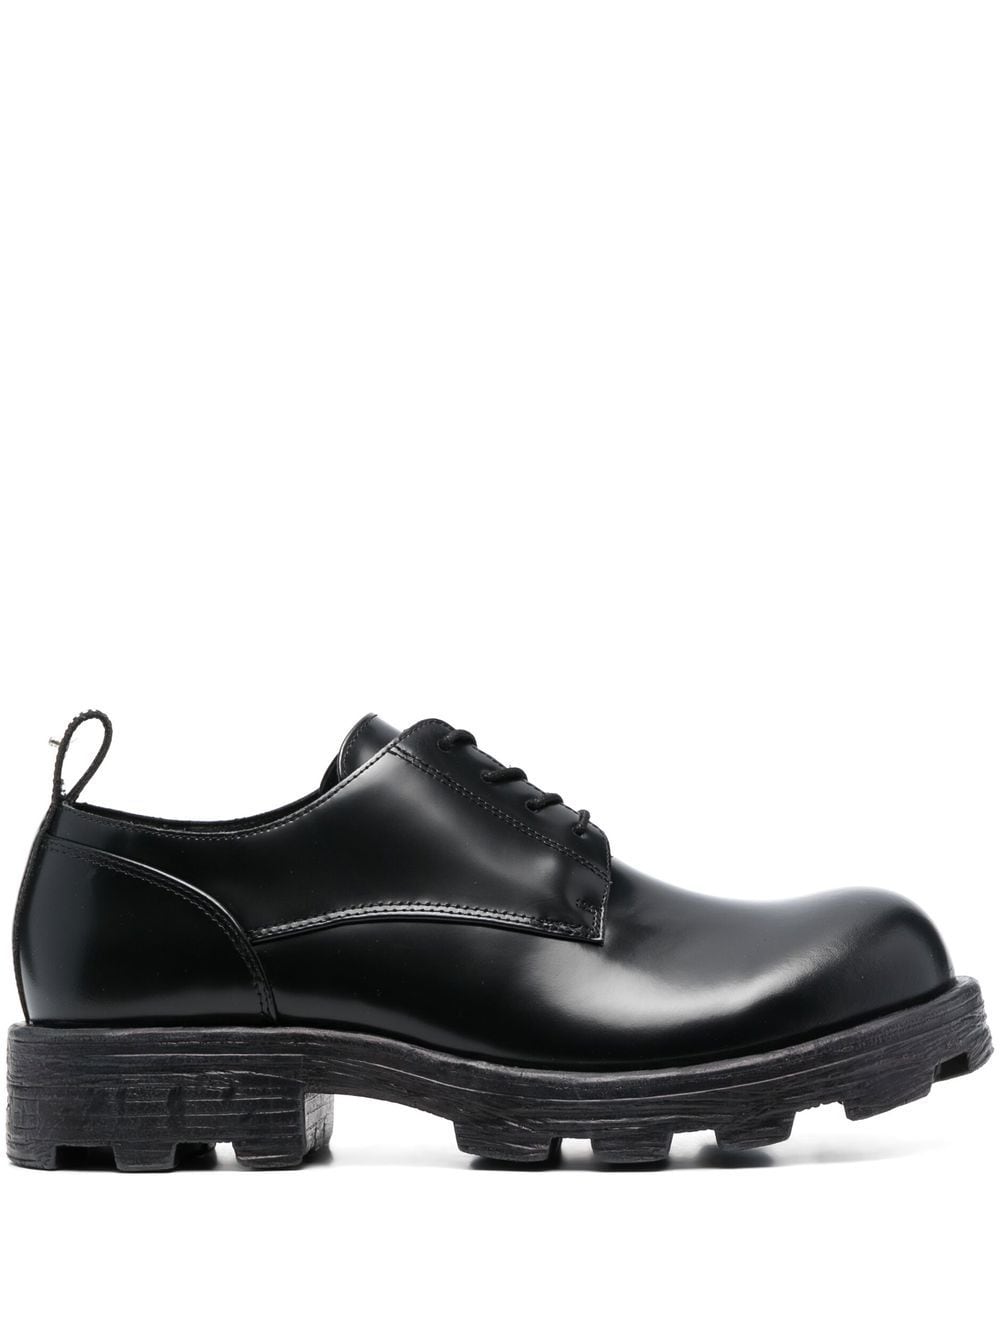 Diesel patent leather Oxford shoes - Schwarz von Diesel